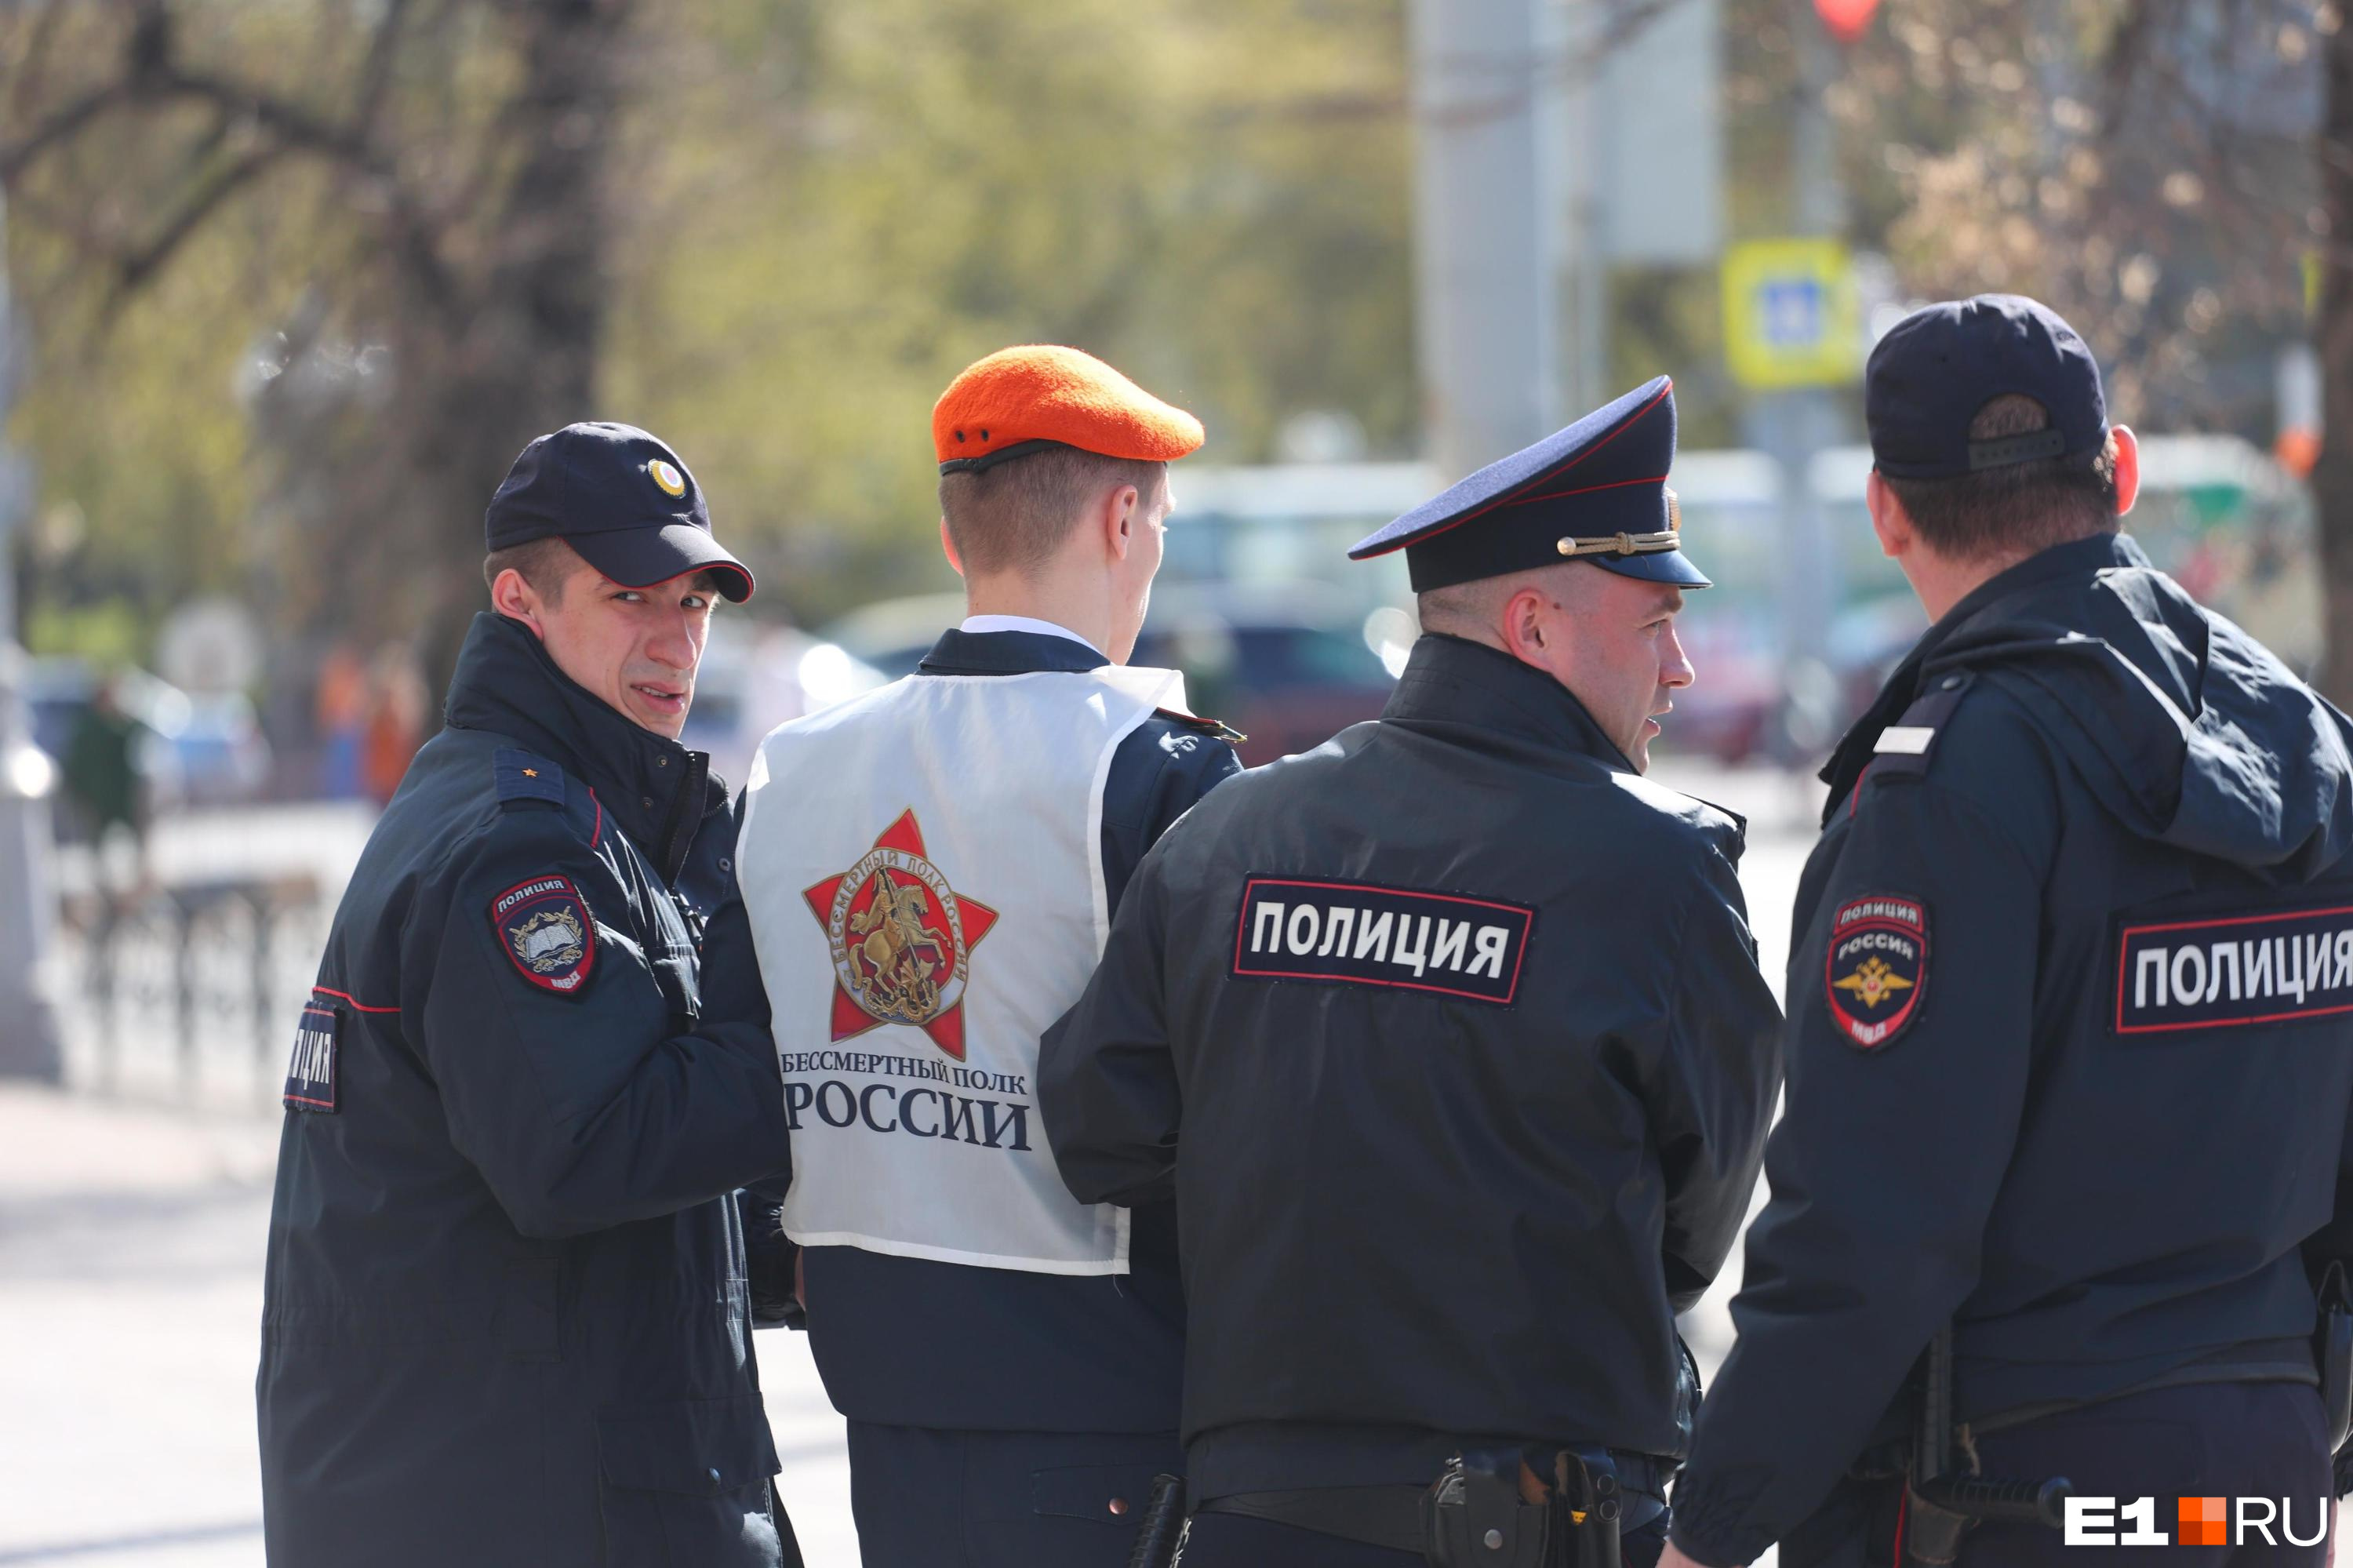 Чуть больше трети жителей Новокузнецка считают работу полиции эффективной. Мнения других разделились